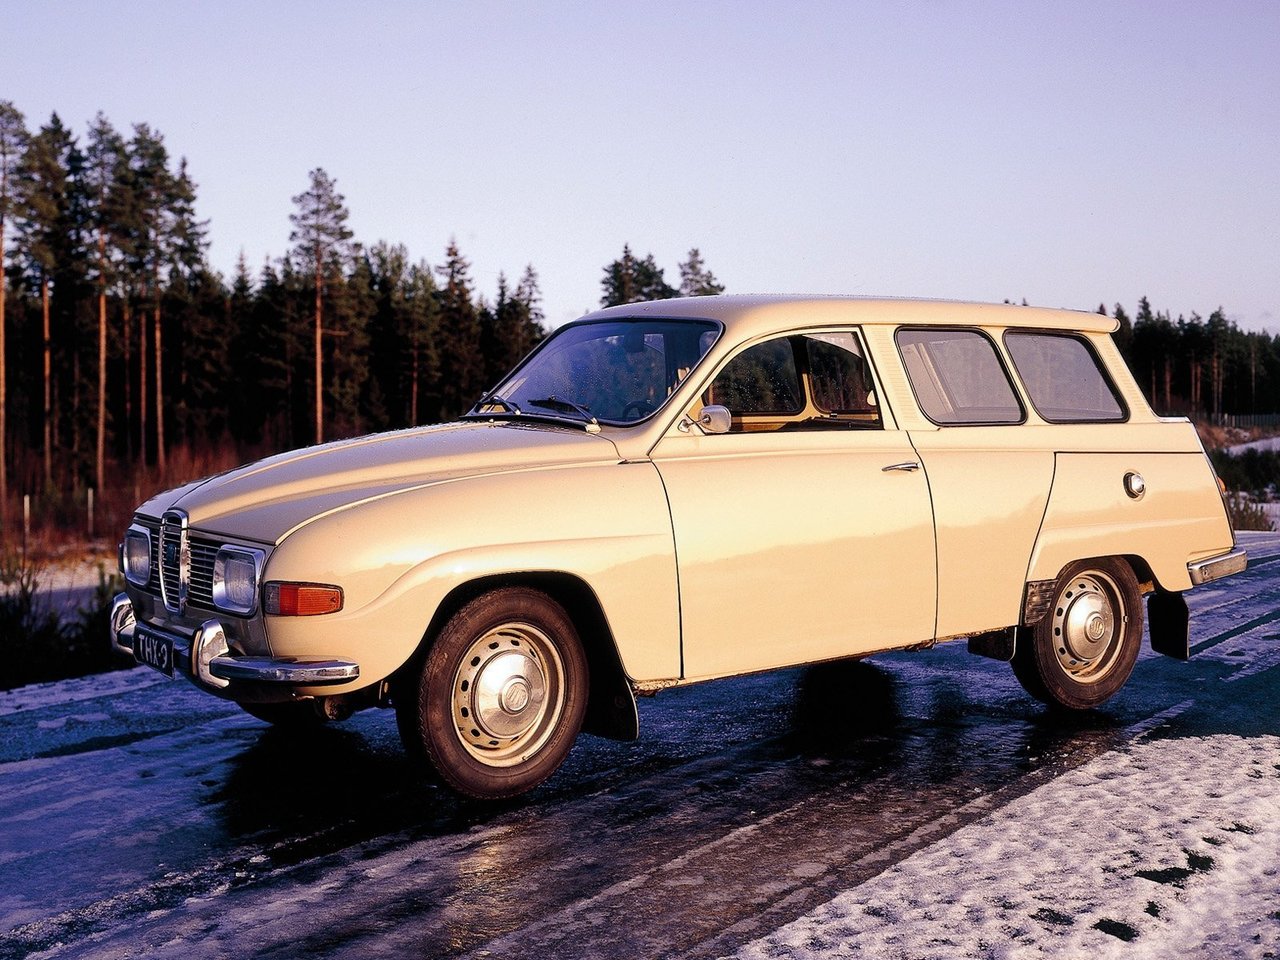 Расход газа одной комплектации универсал три двери Saab 95. Разница стоимости заправки газом и бензином. Автономный пробег до и после установки ГБО.